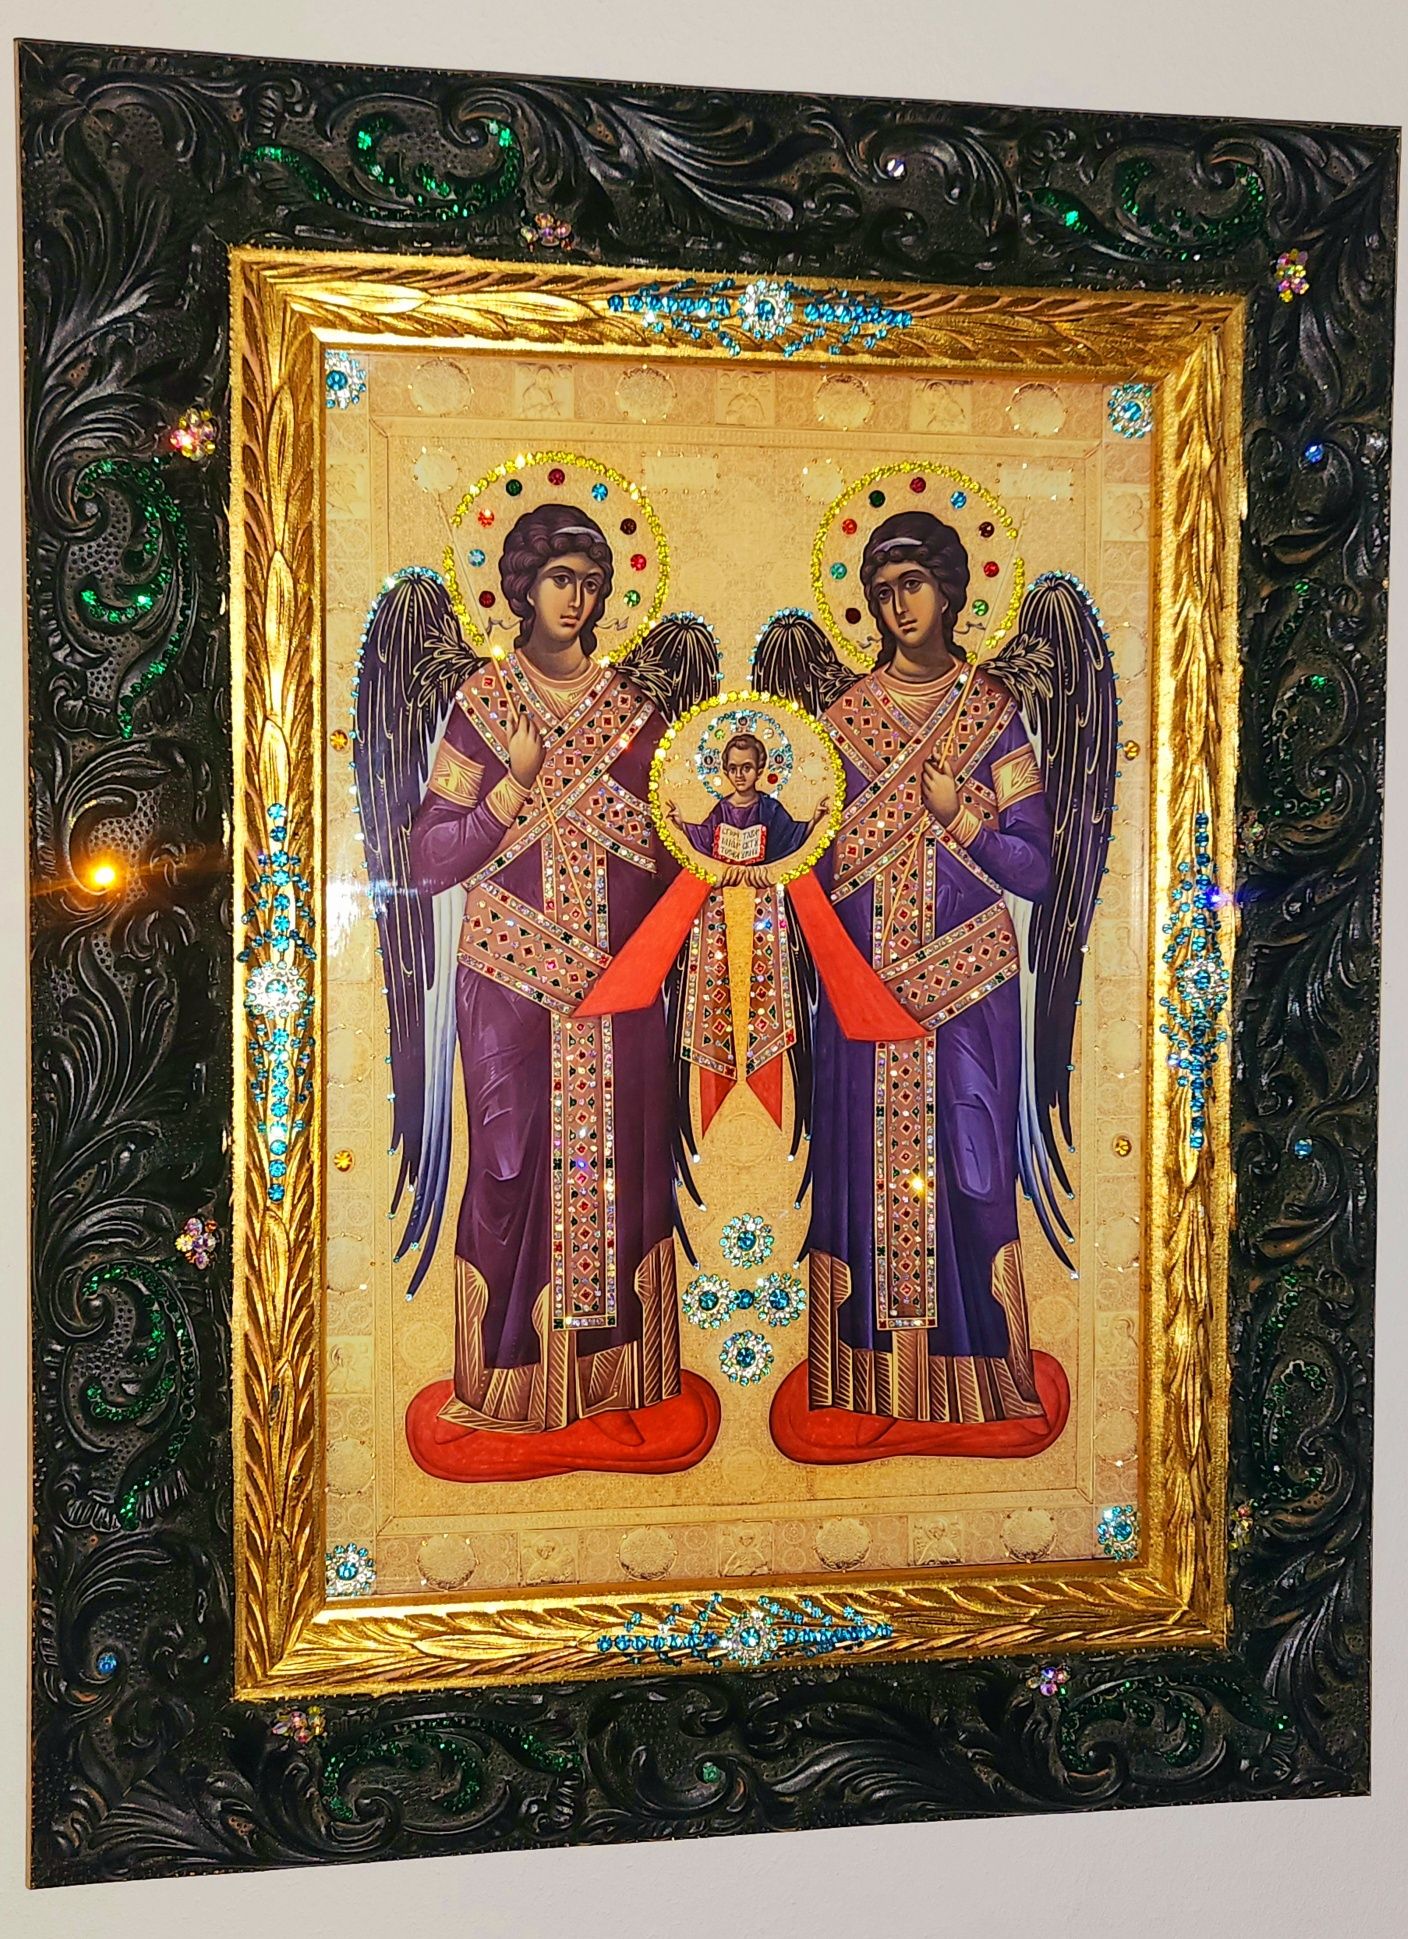 Icoană Sfinții Arhangheli Mihail și Gavriil